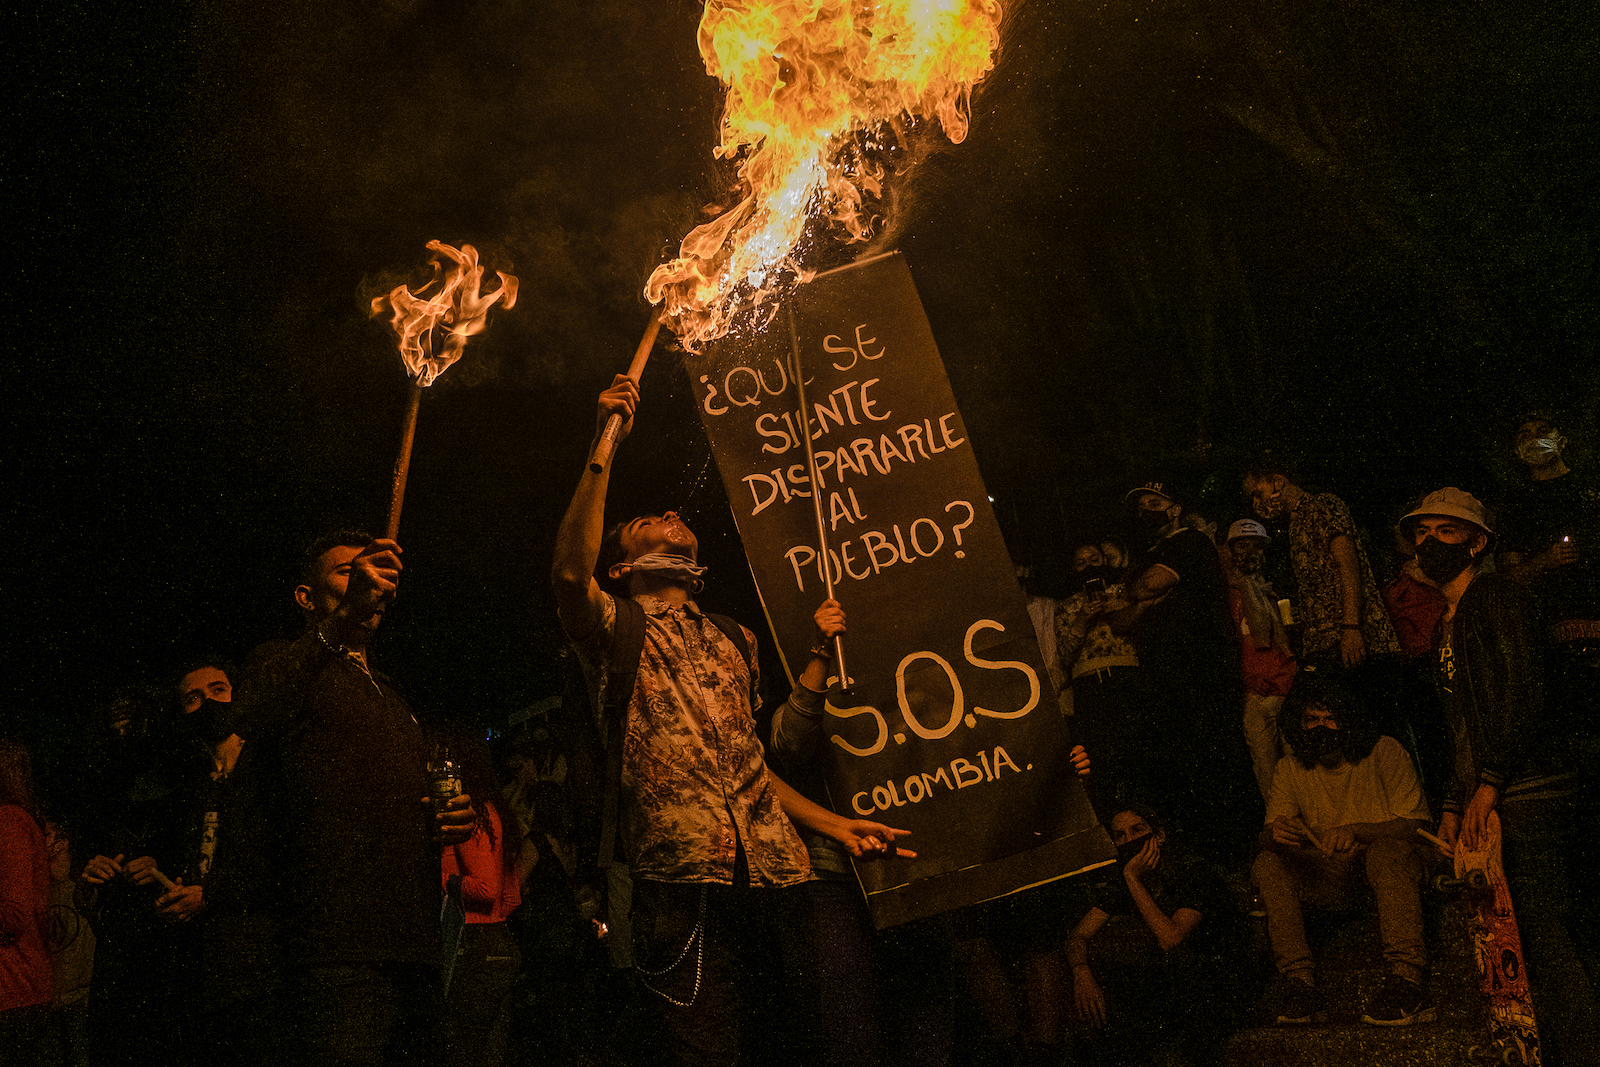 imagen de una persona con un cartel "S.O.S por Colombia"